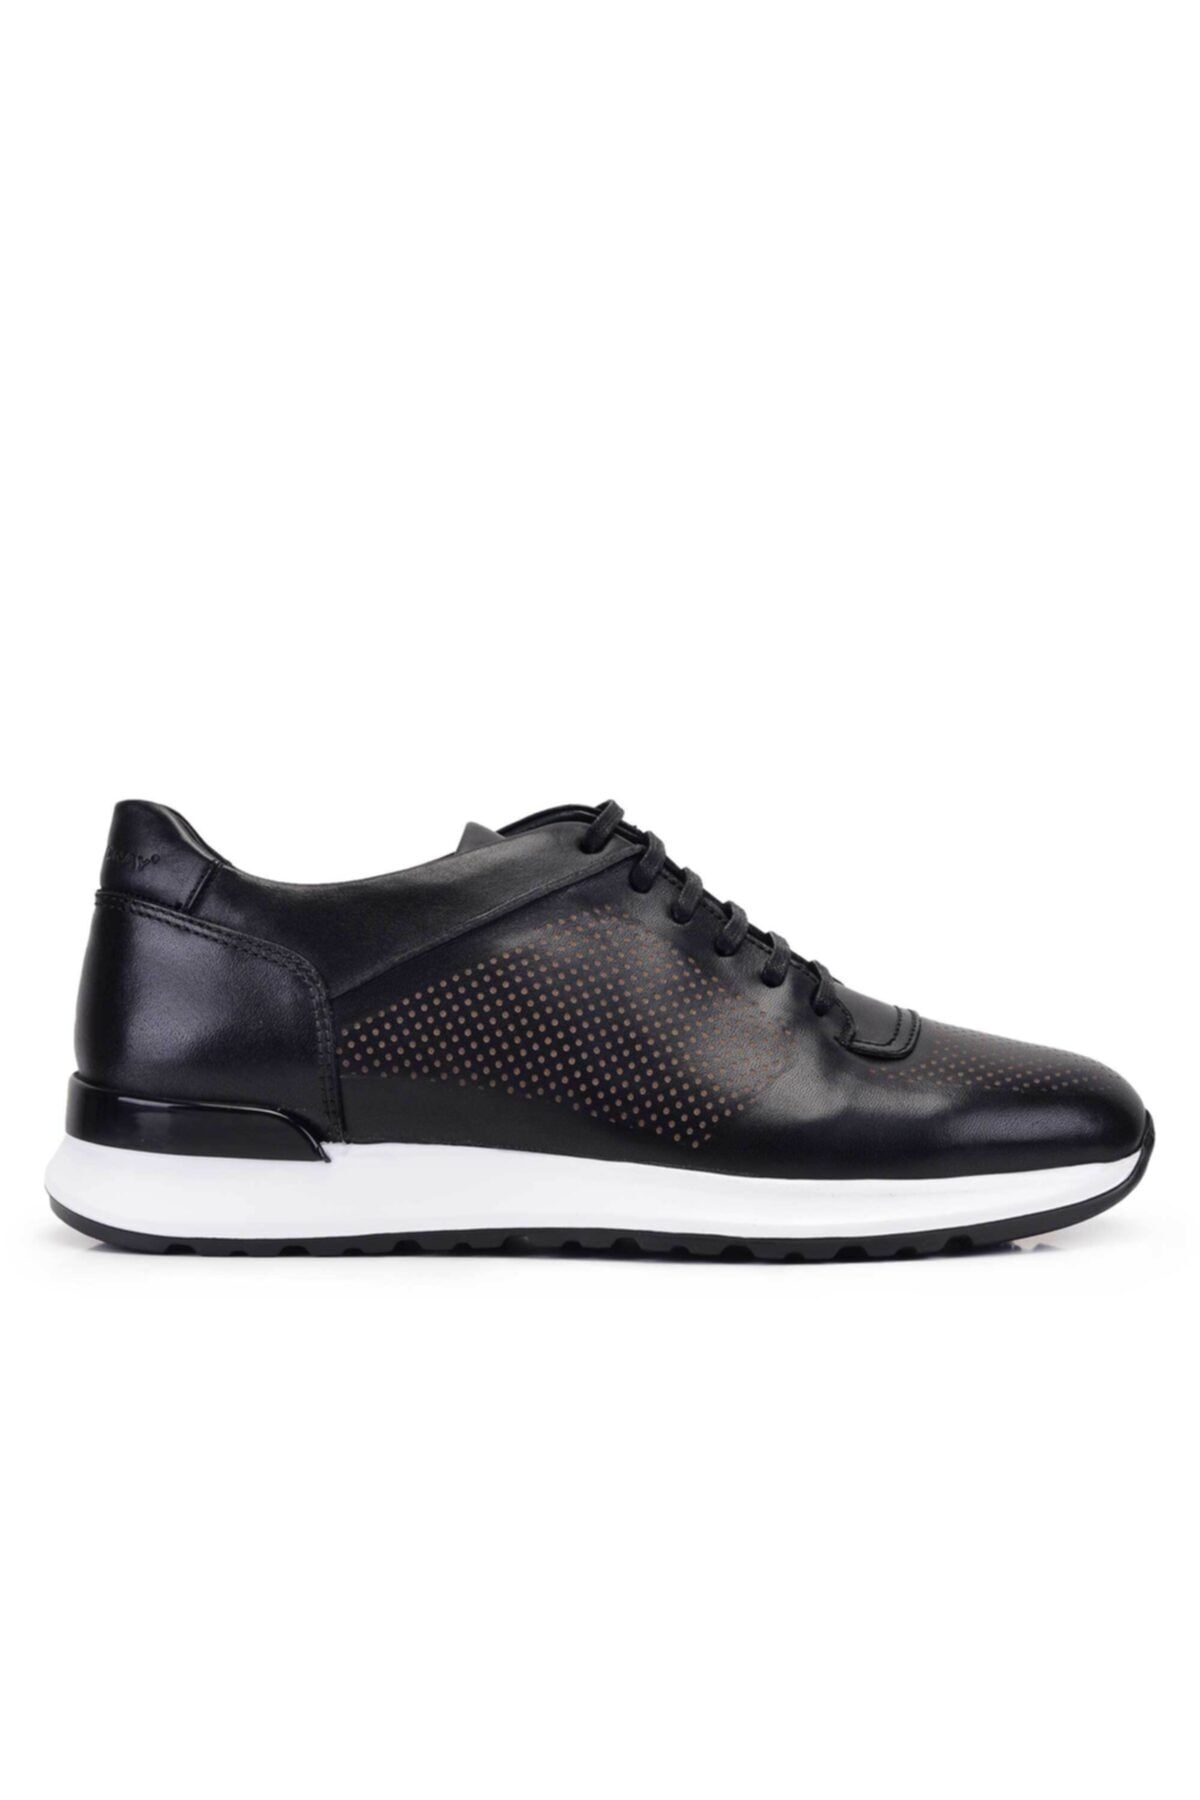 Nevzat Onay Siyah Sneaker Erkek Ayakkabı -11618-